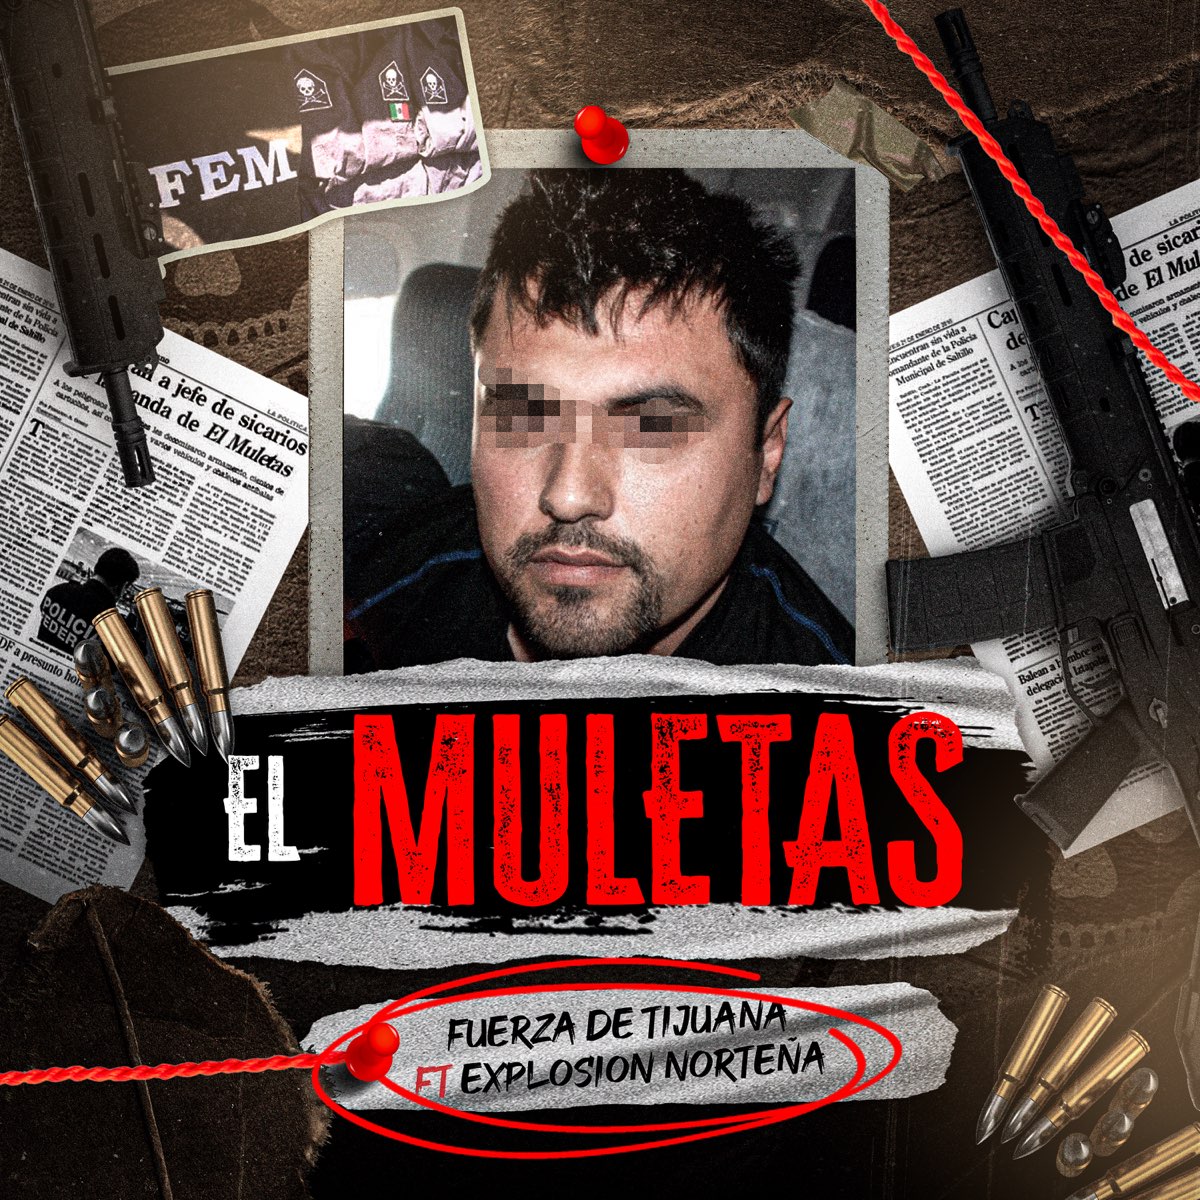 El Muletas (feat. Explosion Norteña) - Single - Album by Fuerza de Tijuana  - Apple Music